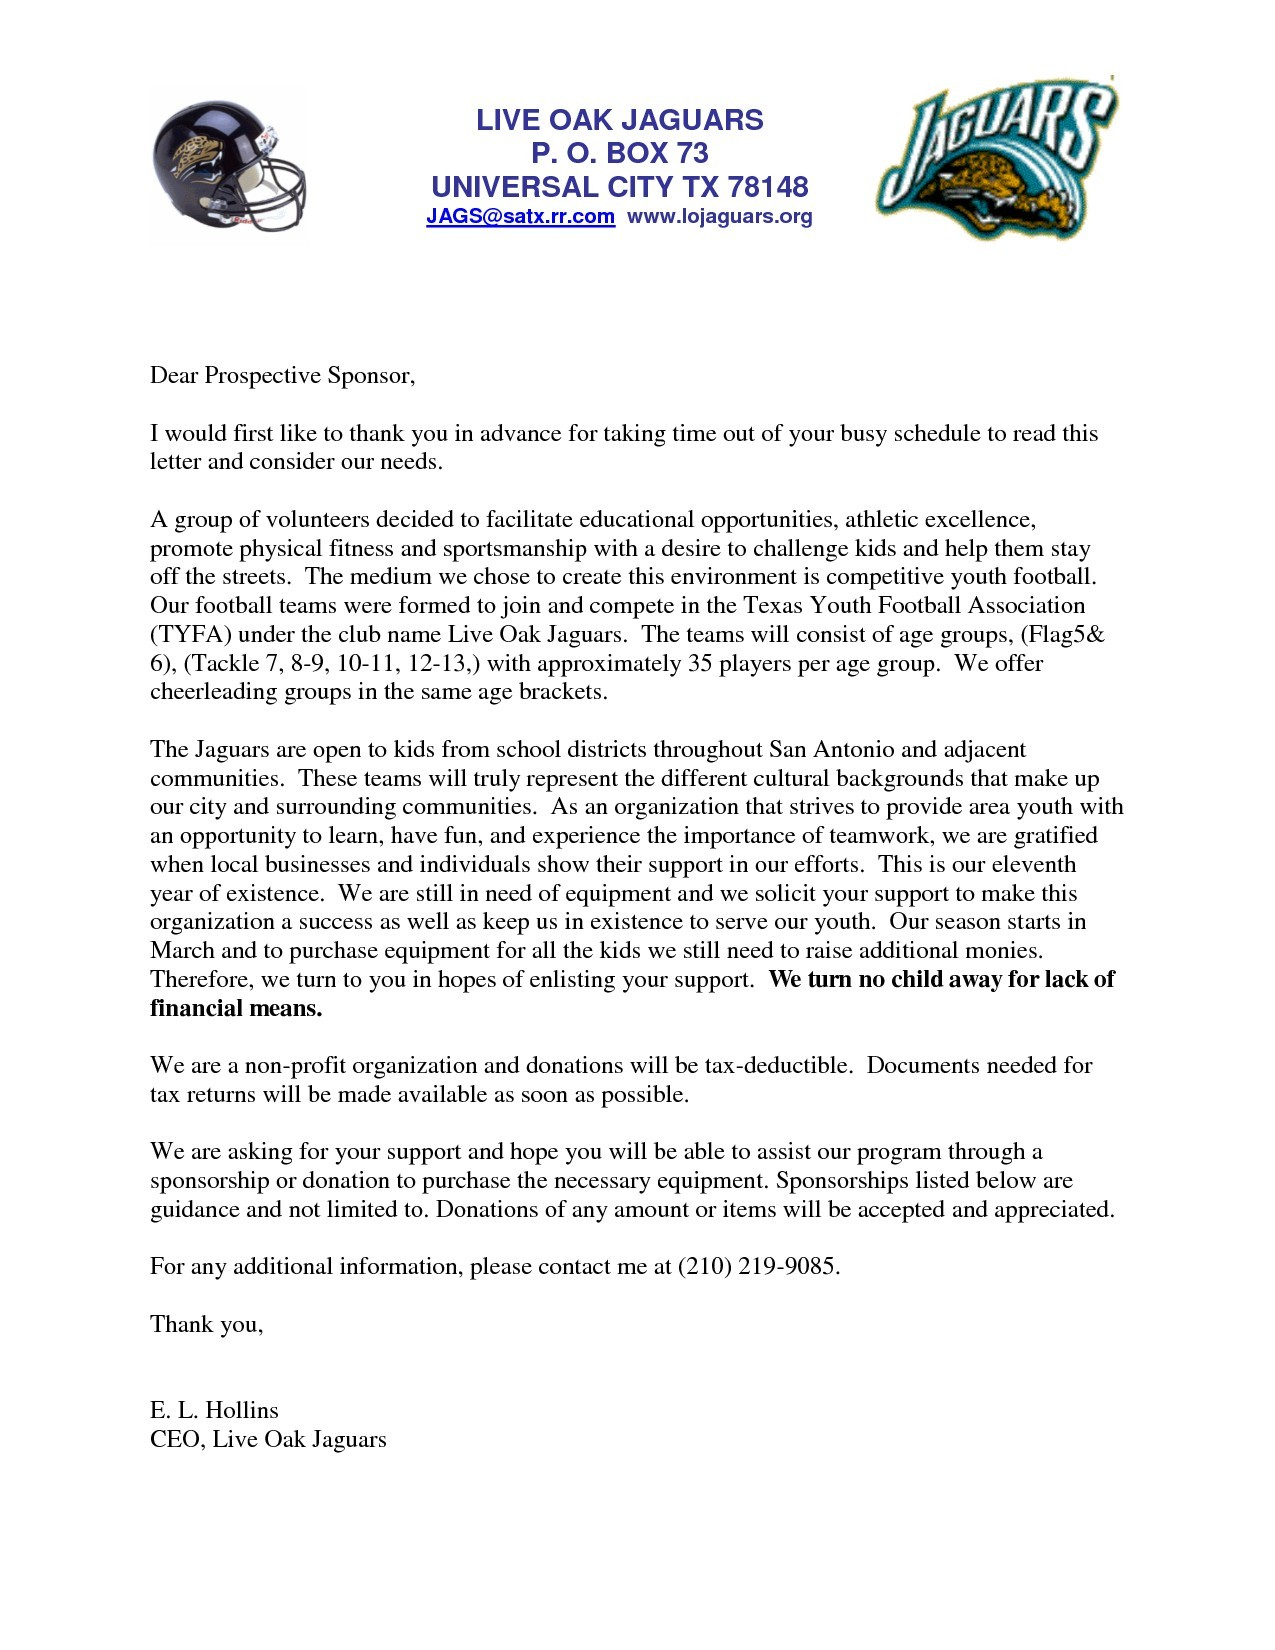 Fundraising Letter Template for Sports Teams - Sponsorship Letter for Sports Valid Sample Team Sponsorship Letter